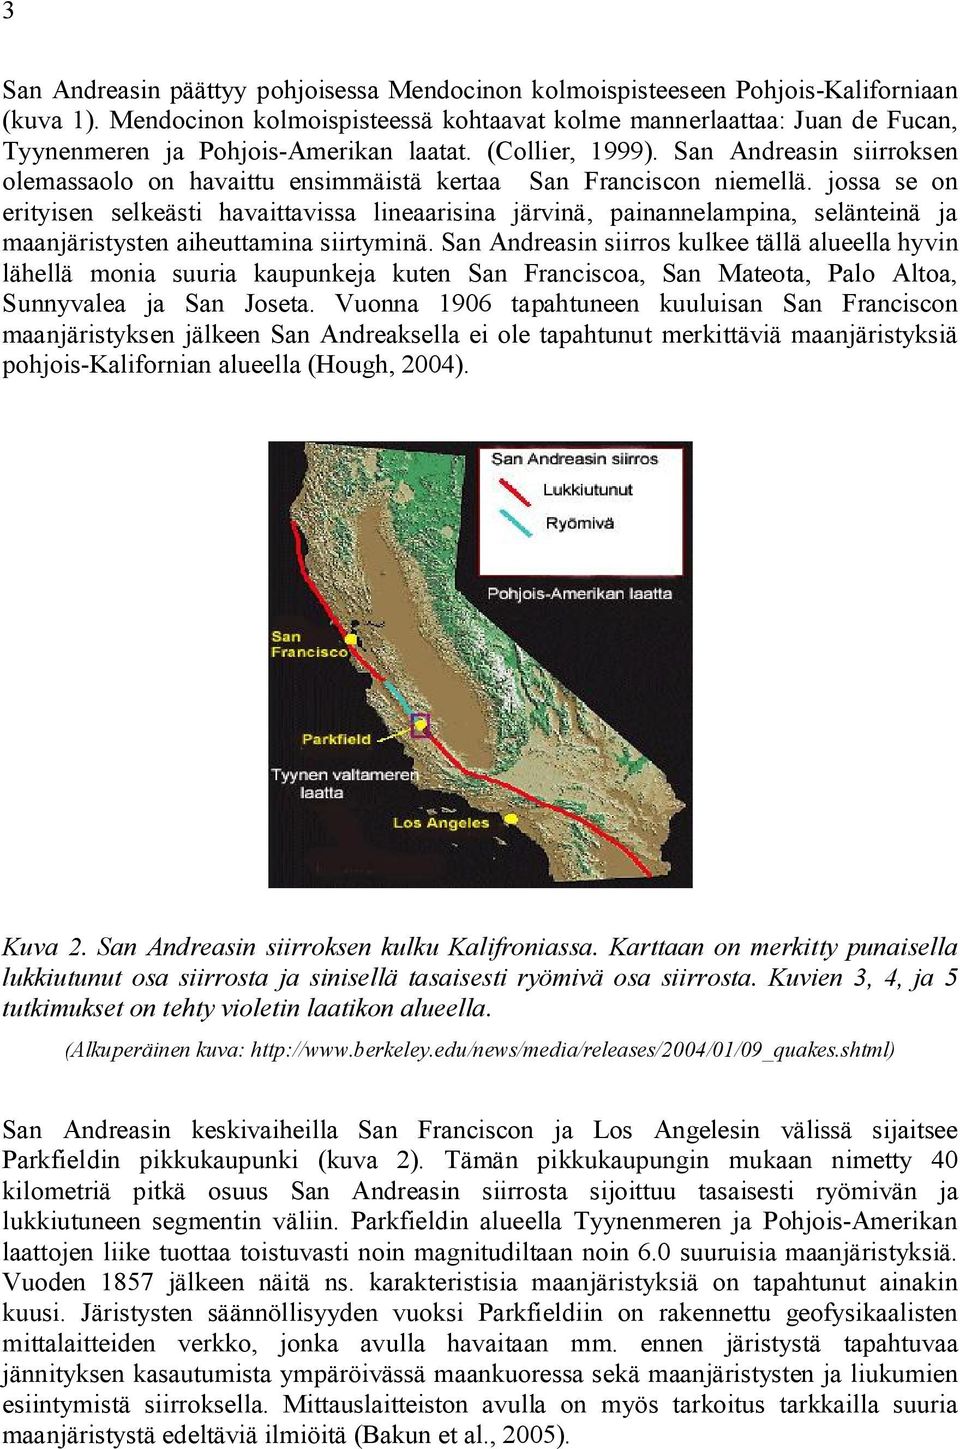 San Andreasin siirroksen olemassaolo on havaittu ensimmäistä kertaa San Franciscon niemellä.